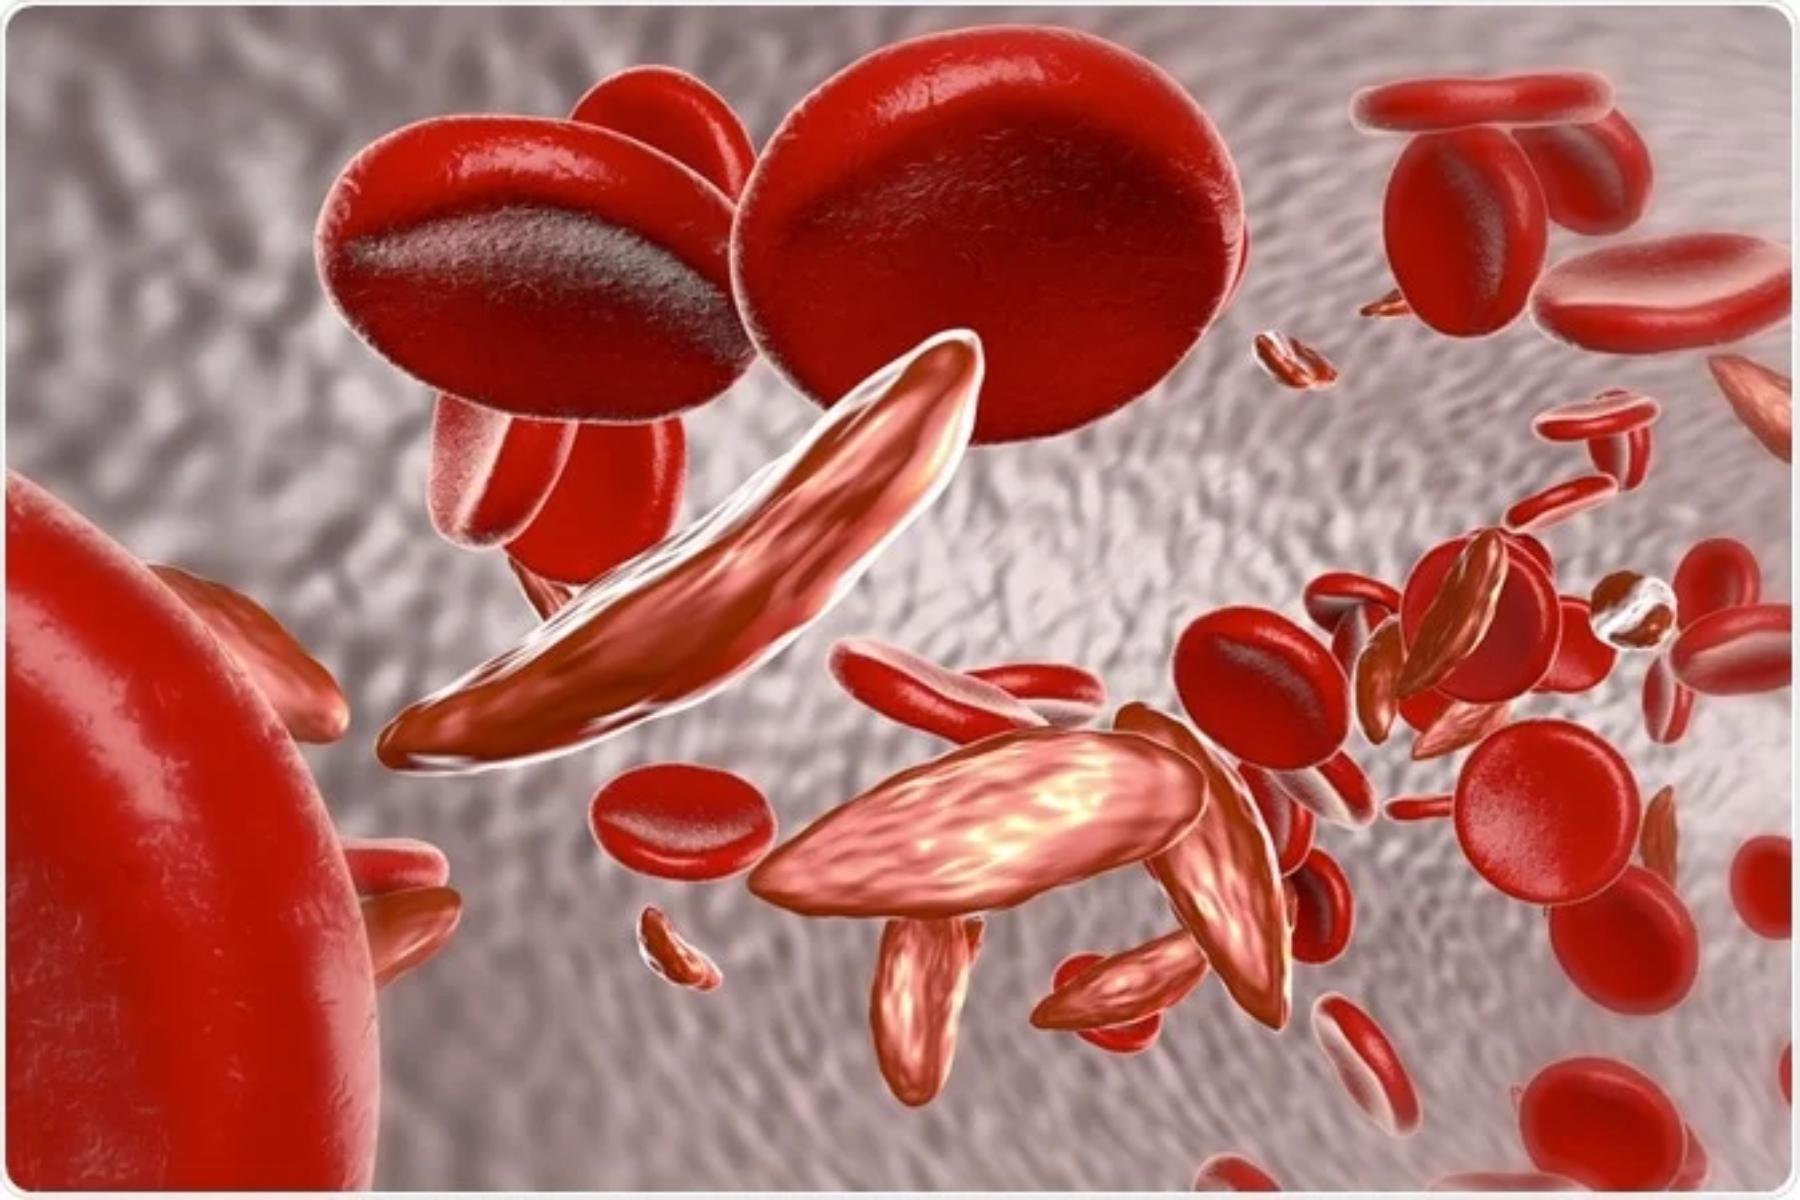 Δρεπανοκυτταρική αναιμία: Πώς η δρεπανοκυτταρική αναιμία επηρεάζει την έμμηνο ρύση;